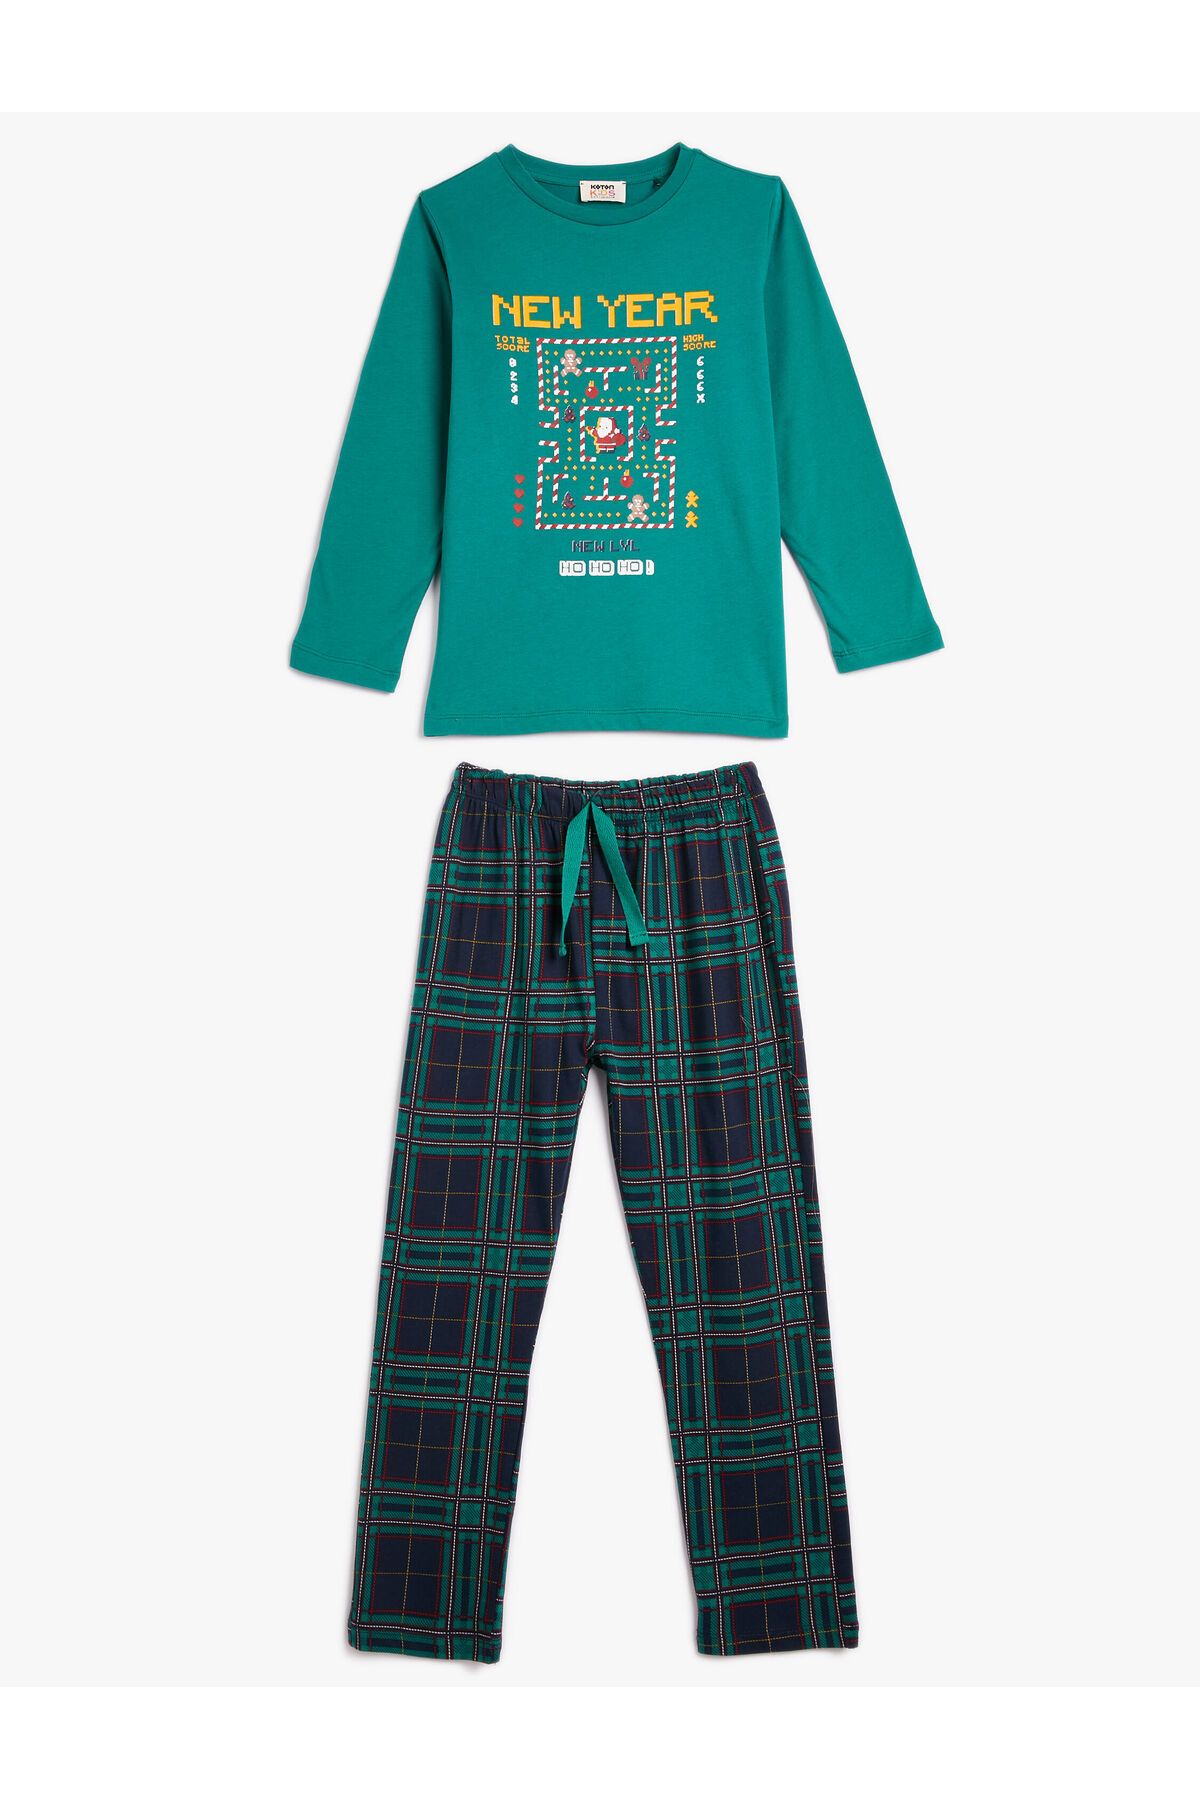 Koton Aile Kombini - Pijama Takımı Yılbaşı Temalı 2 Parça Pamuklu